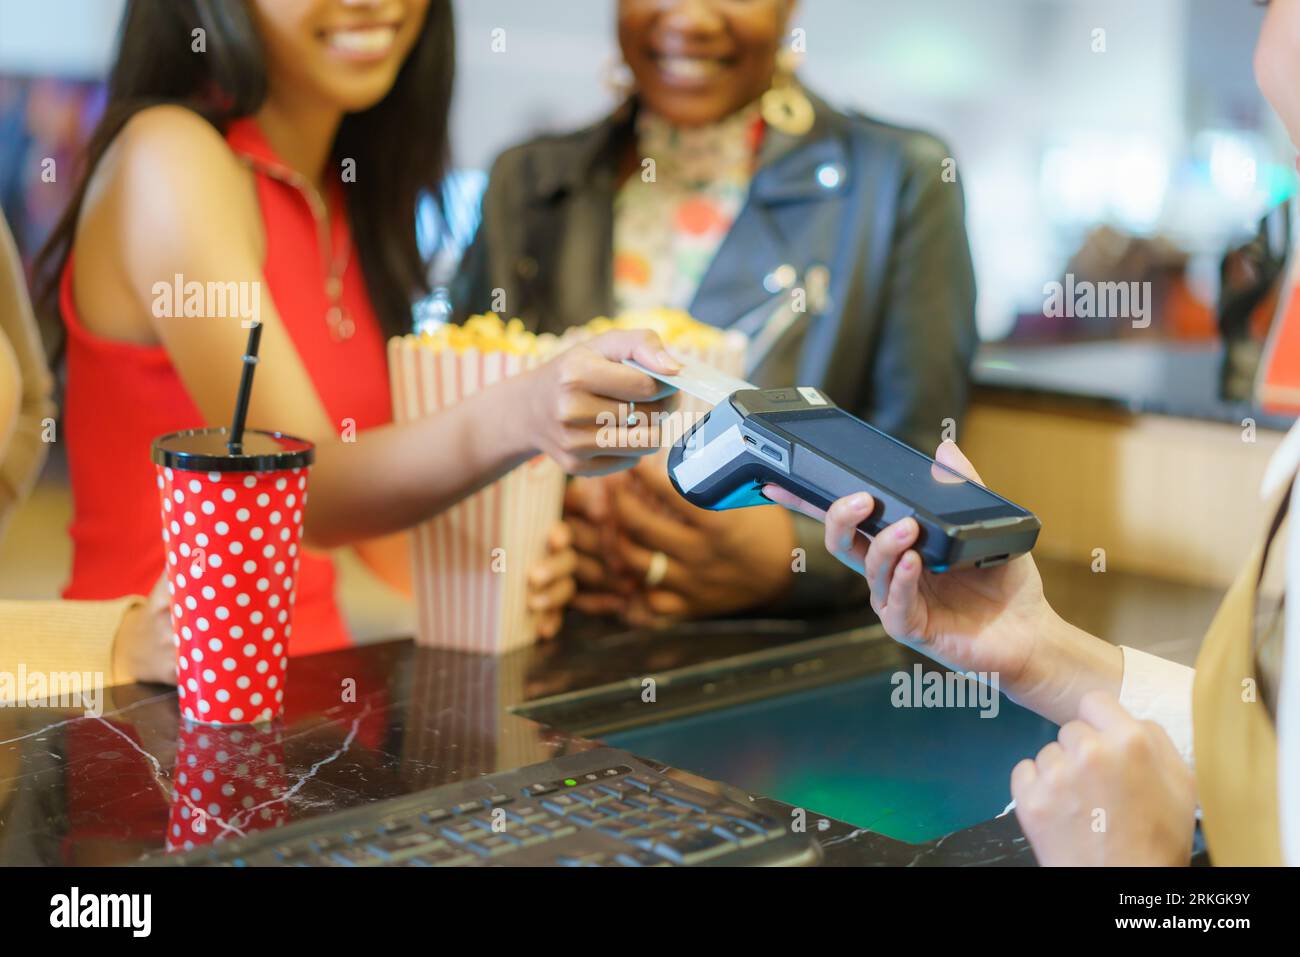 couple de lesbiennes femmes paie pour les billets de cinéma au comptoir, en utilisant leur carte de crédit, ajoutant la commodité moderne à leur sortie de cinéma. Banque D'Images